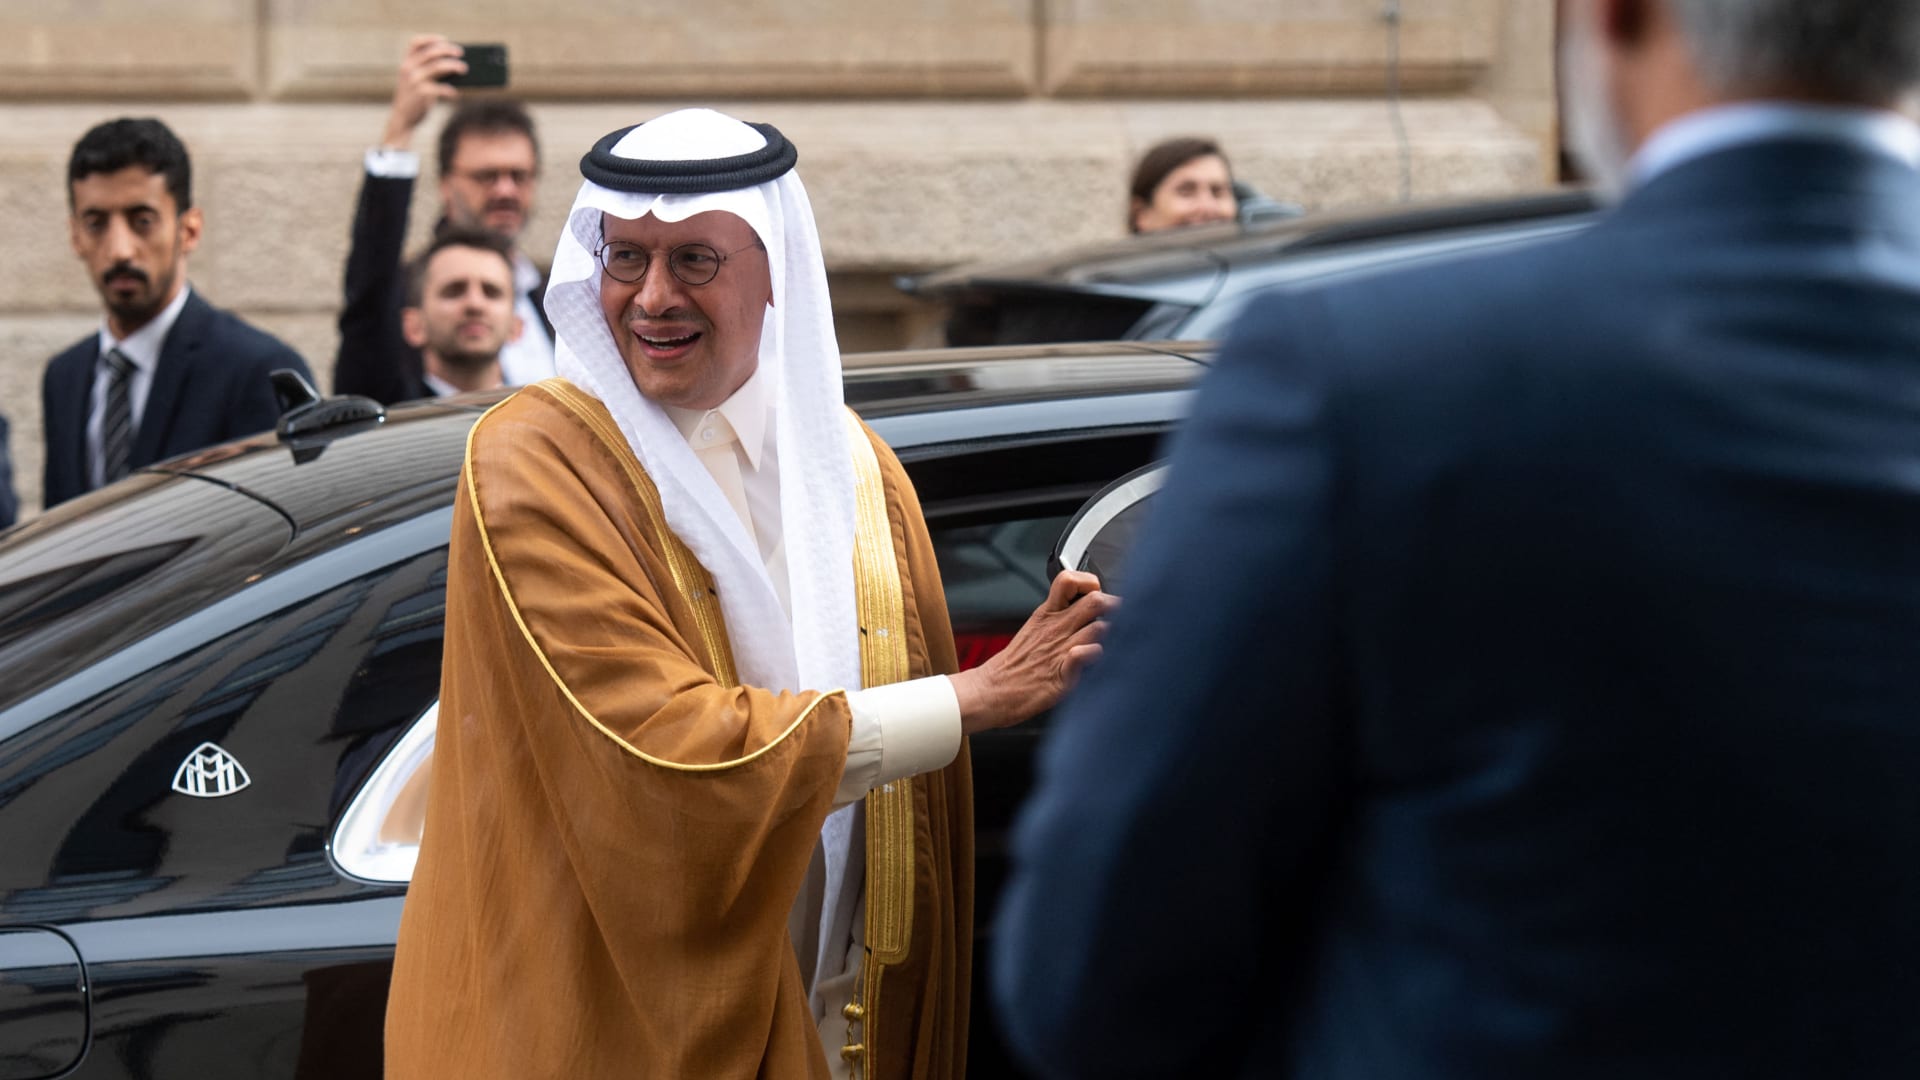 وزير الطاقة السعودي عند نزوله من السيارة 